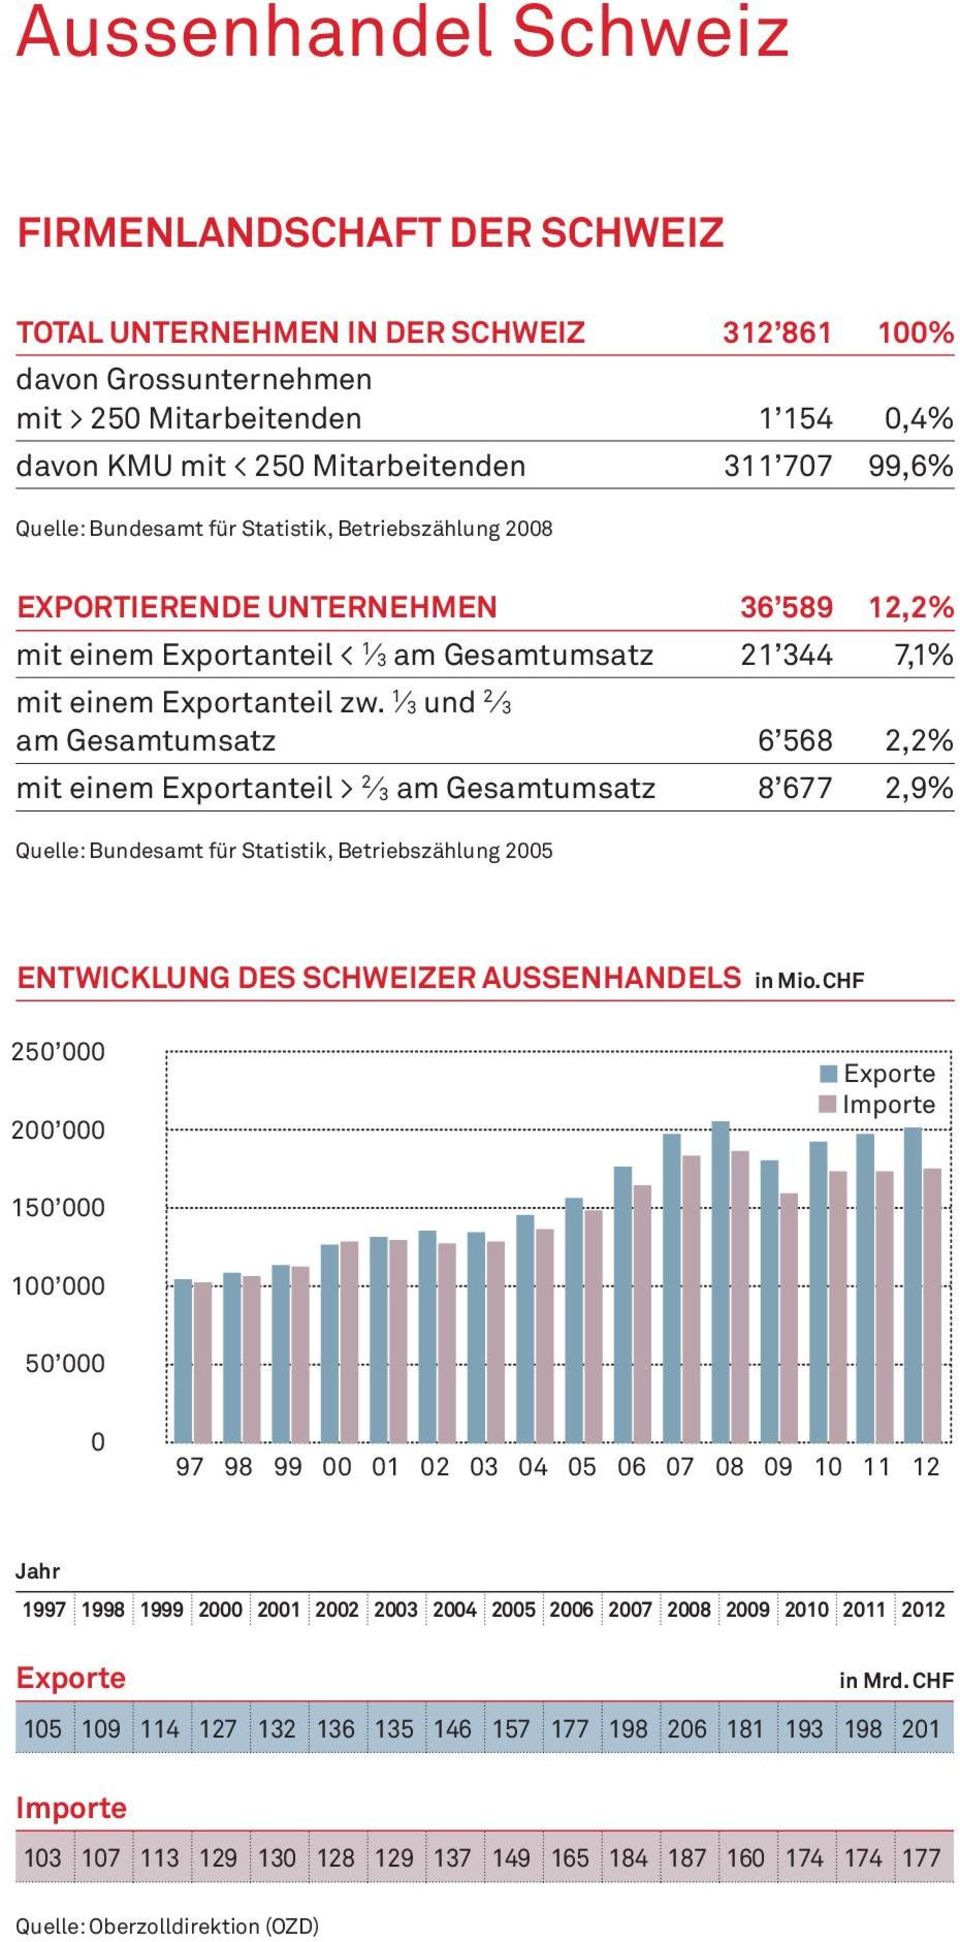 1 3 und 2 3 am Gesamtumsatz 6 568 2,2% mit einem Exportanteil > 2 3 am Gesamtumsatz 8 677 2,9% Quelle: Bundesamt für Statistik, Betriebszählung 2005 Entwicklung des schweizer aussenhandels in Mio.